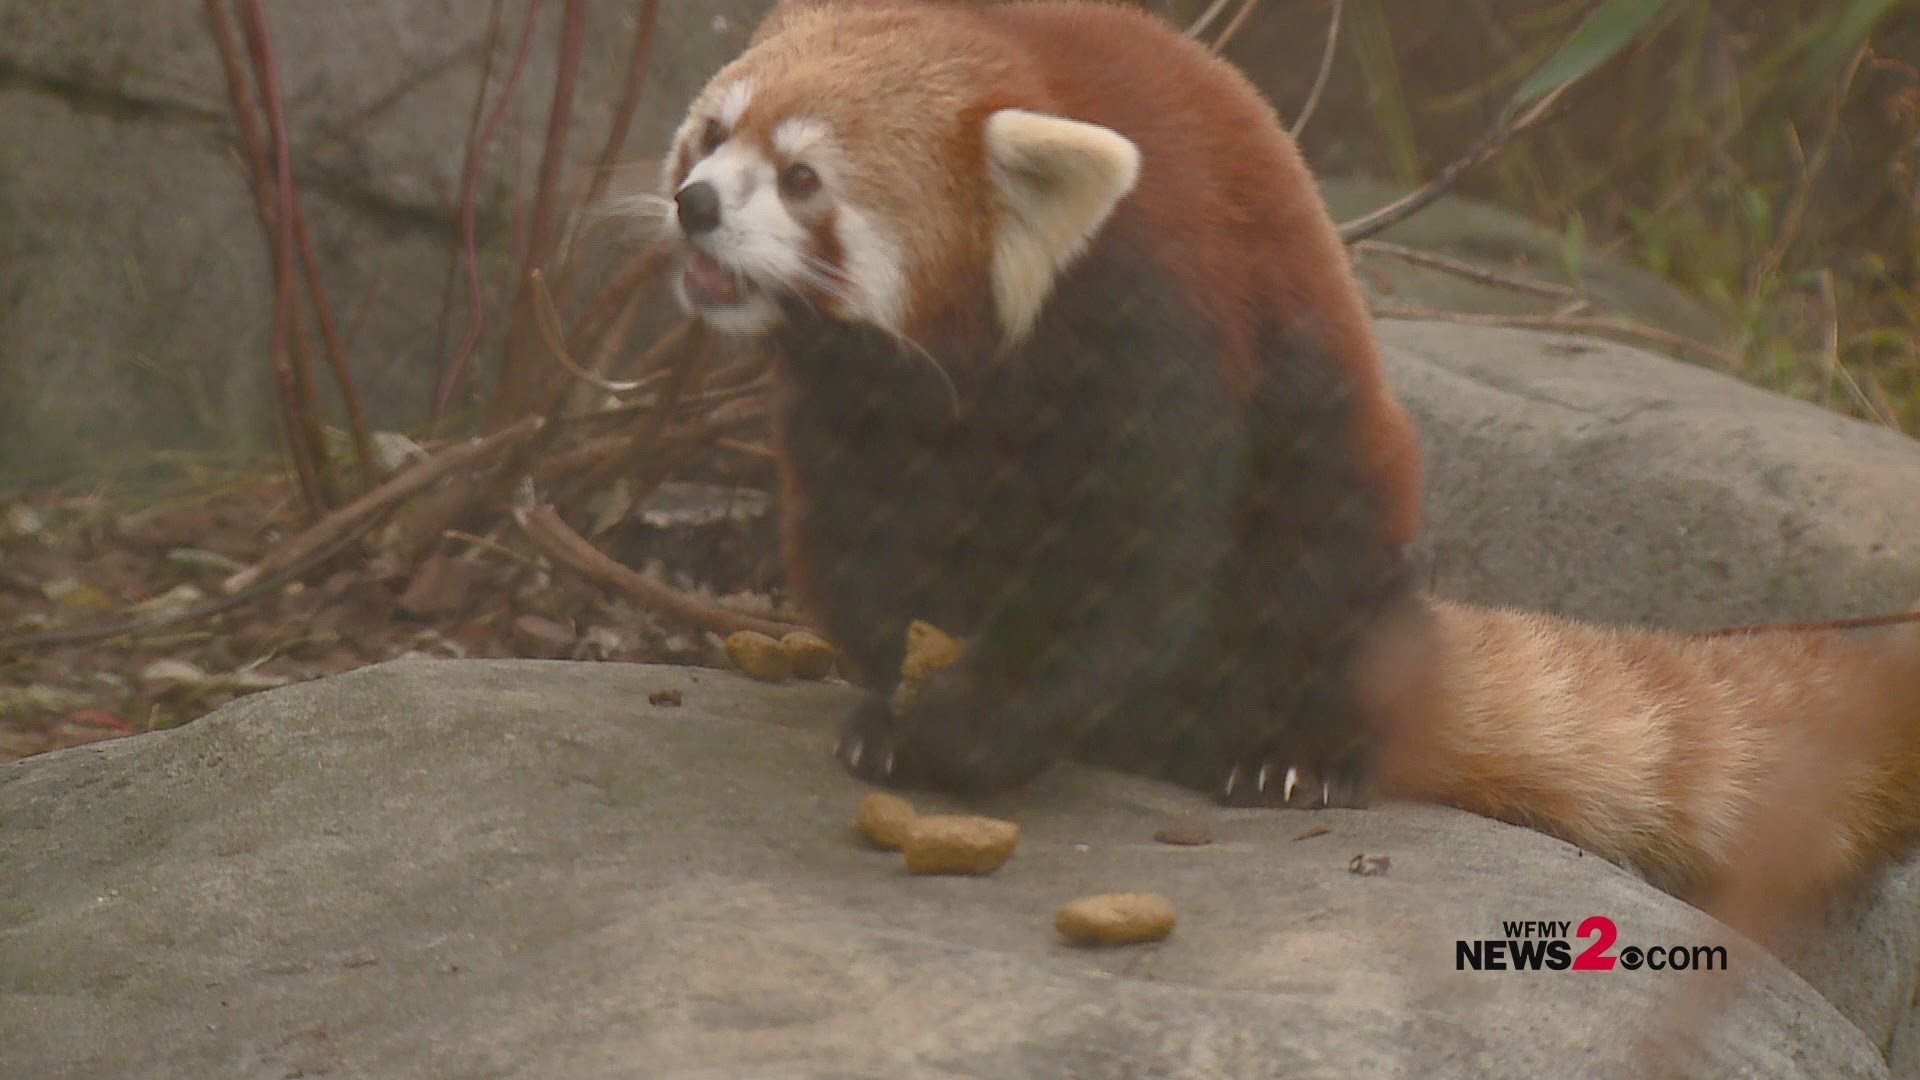 Red Panda enjoying breakfast on Thanksgiving morning.